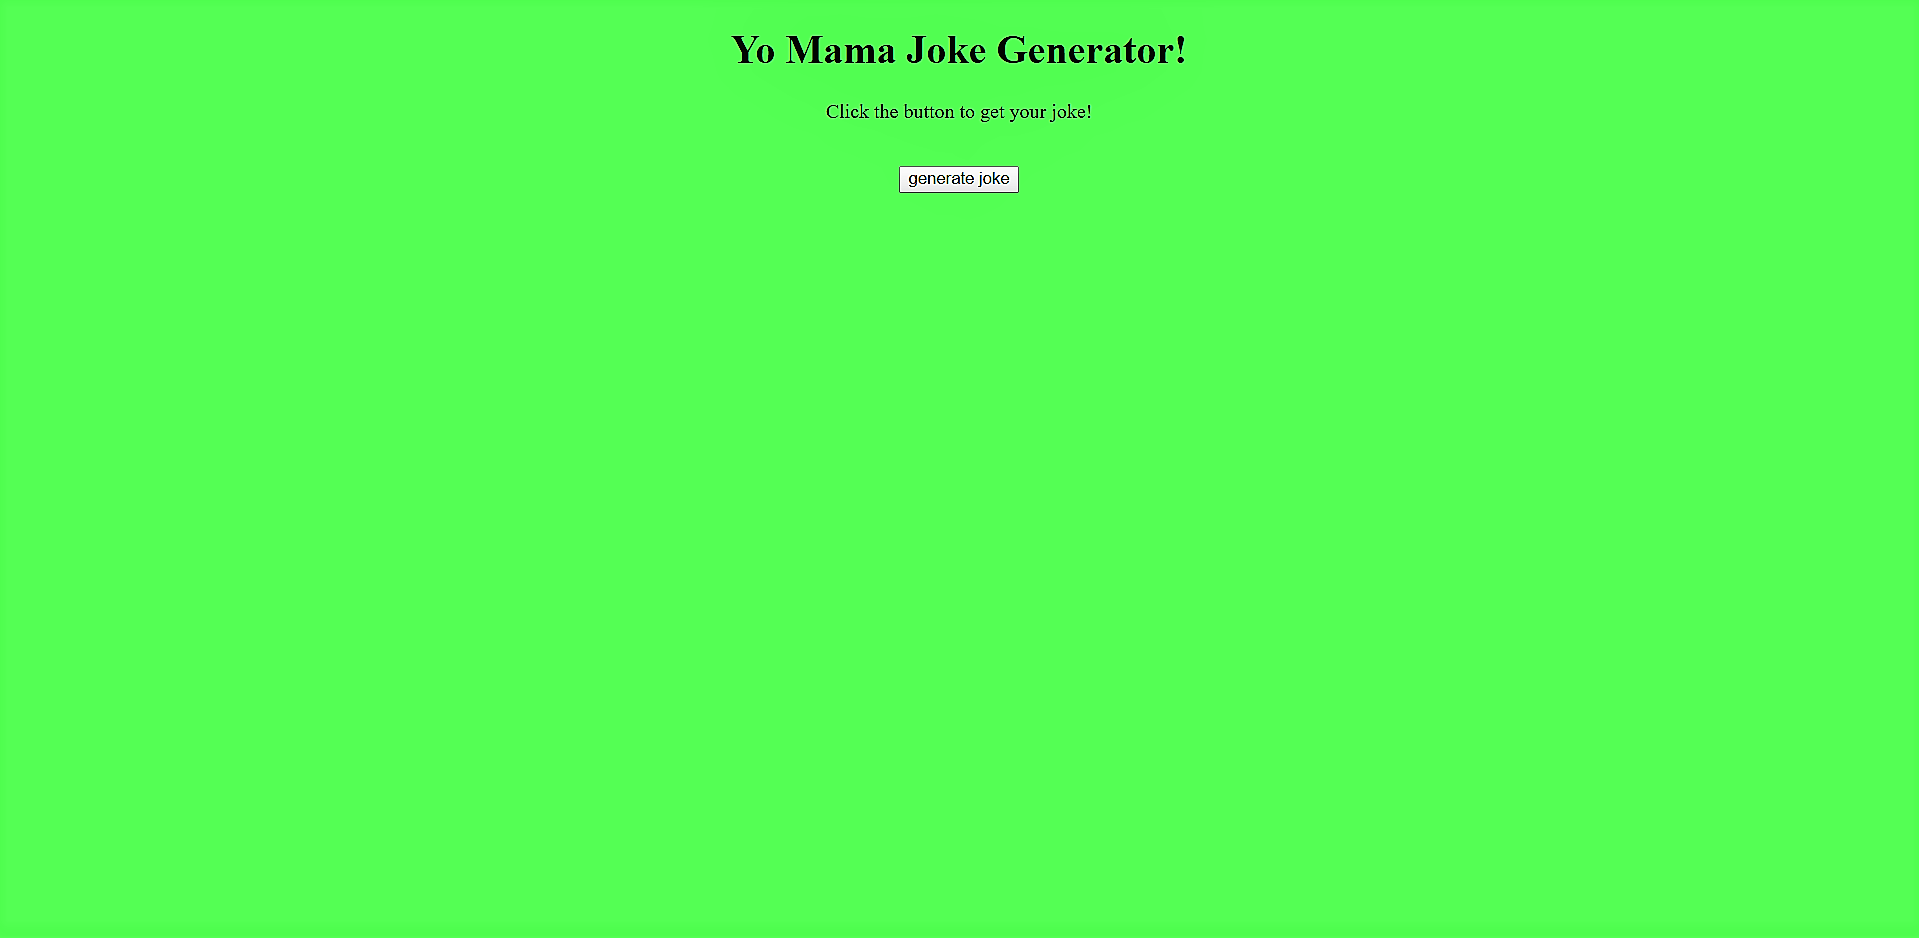 Joke Generator